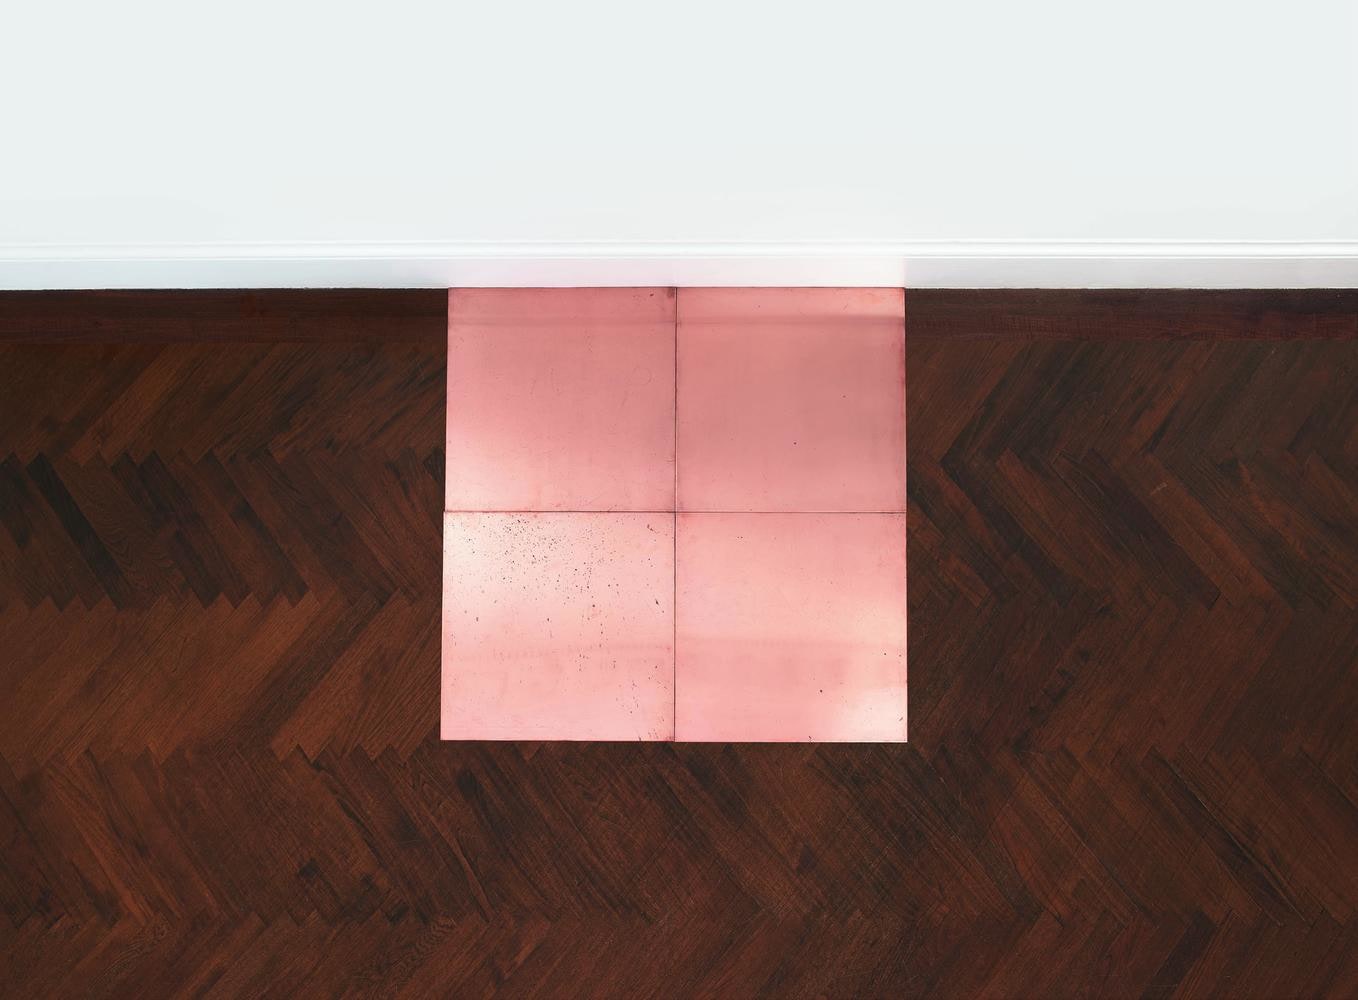 Carl Andre
Fourth Copper Cardinal
1973
copper
4-unit square (2 x 2)
overall: 3/16 x 39 3/8 x 39 3/8 inches (.5 x 100 x 100 cm)